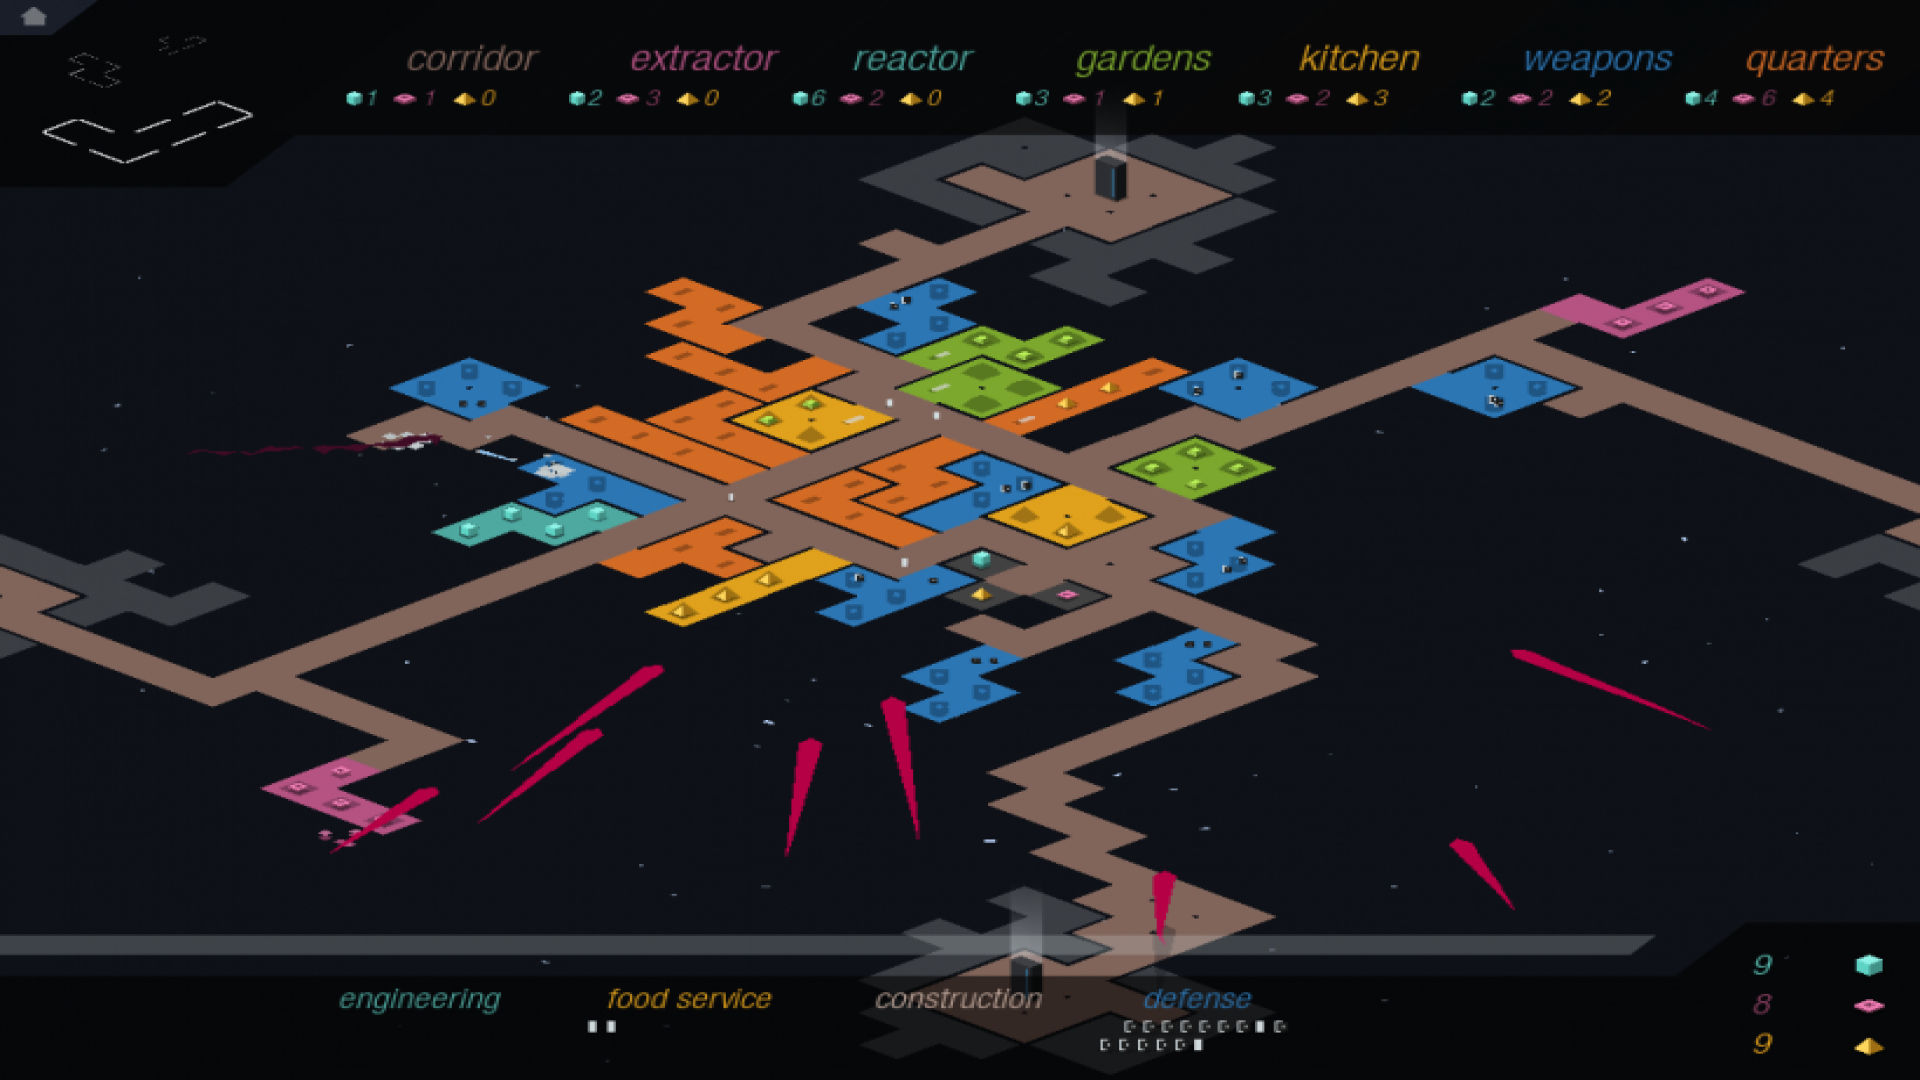 Trò chơi chiến lược di động tốt nhất: rymdkapsel. Hình ảnh cho thấy một bản đồ đa sắc, bận rộn